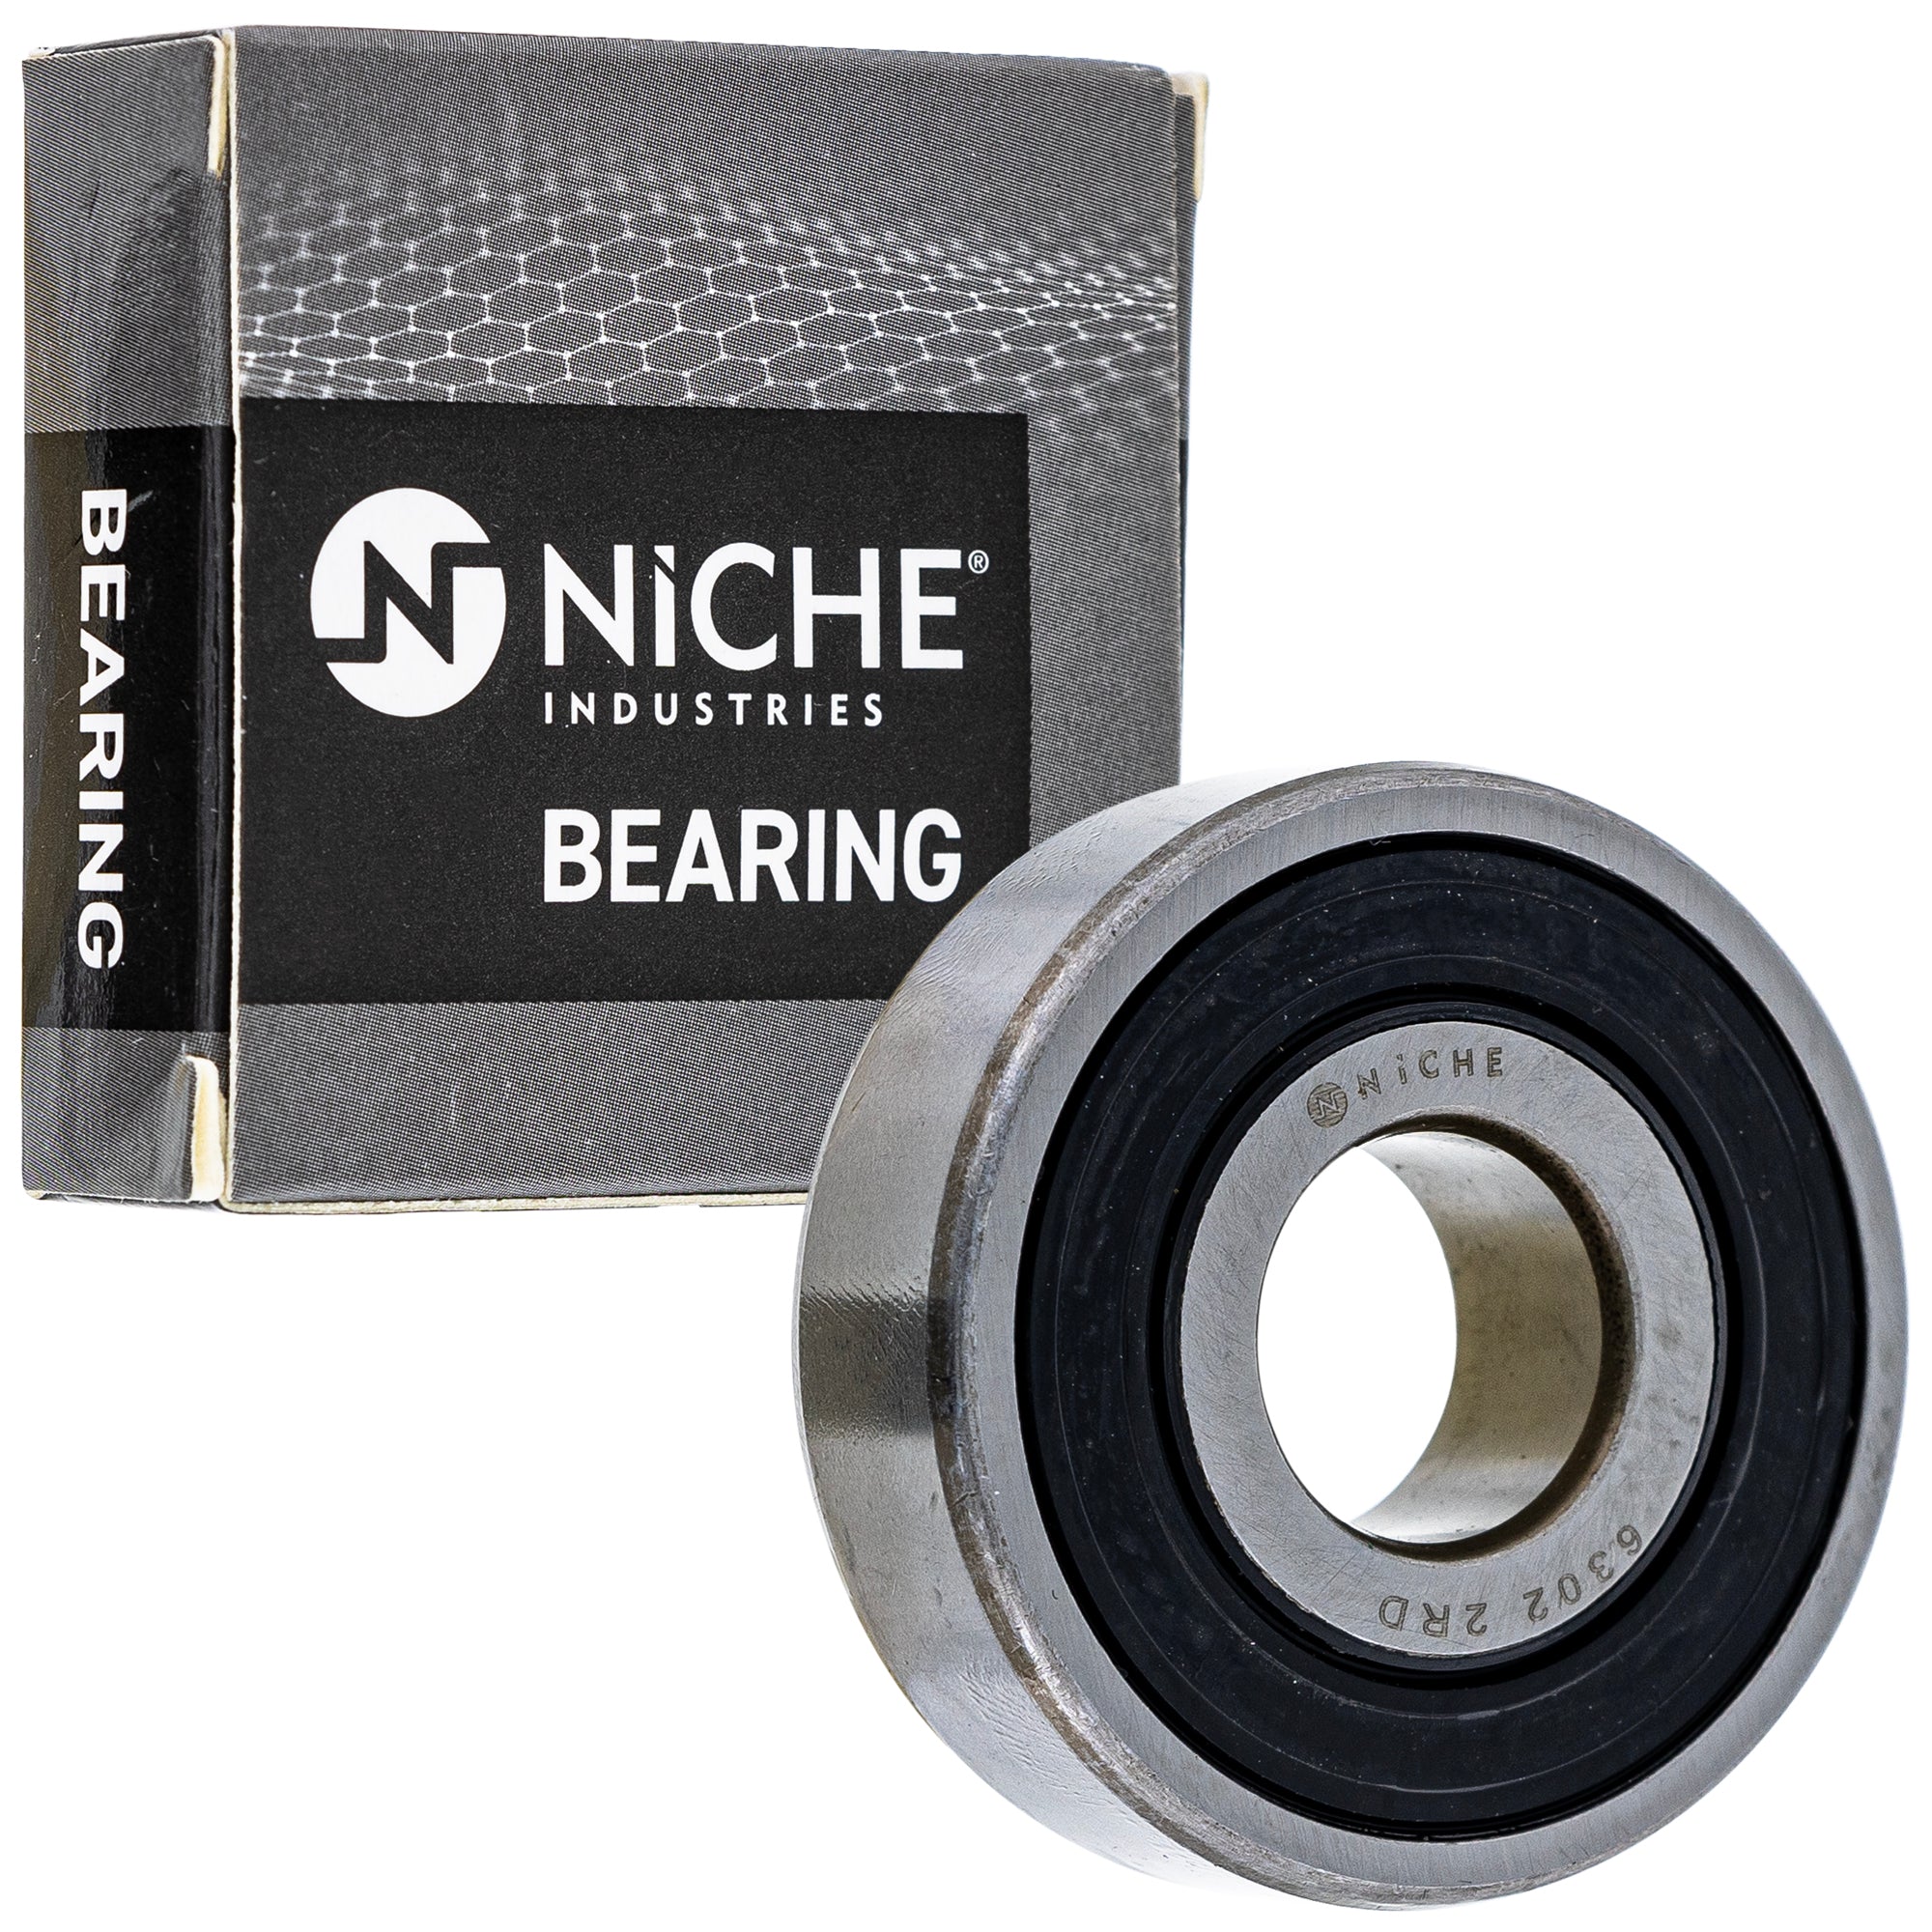 NICHE 519-CBB2324R Bearing for zOTHER XR200 XR185 XL350 XL250